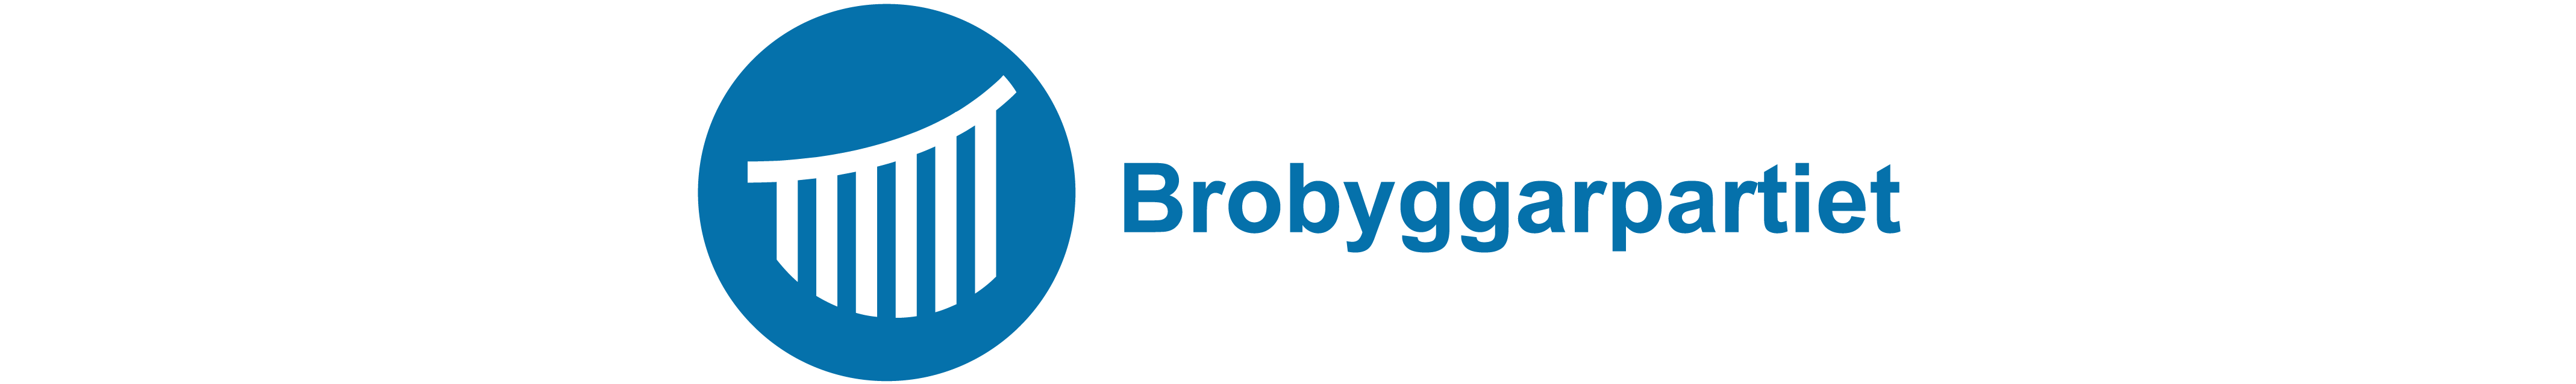 Partisymbol för Brobyggarpartiet.